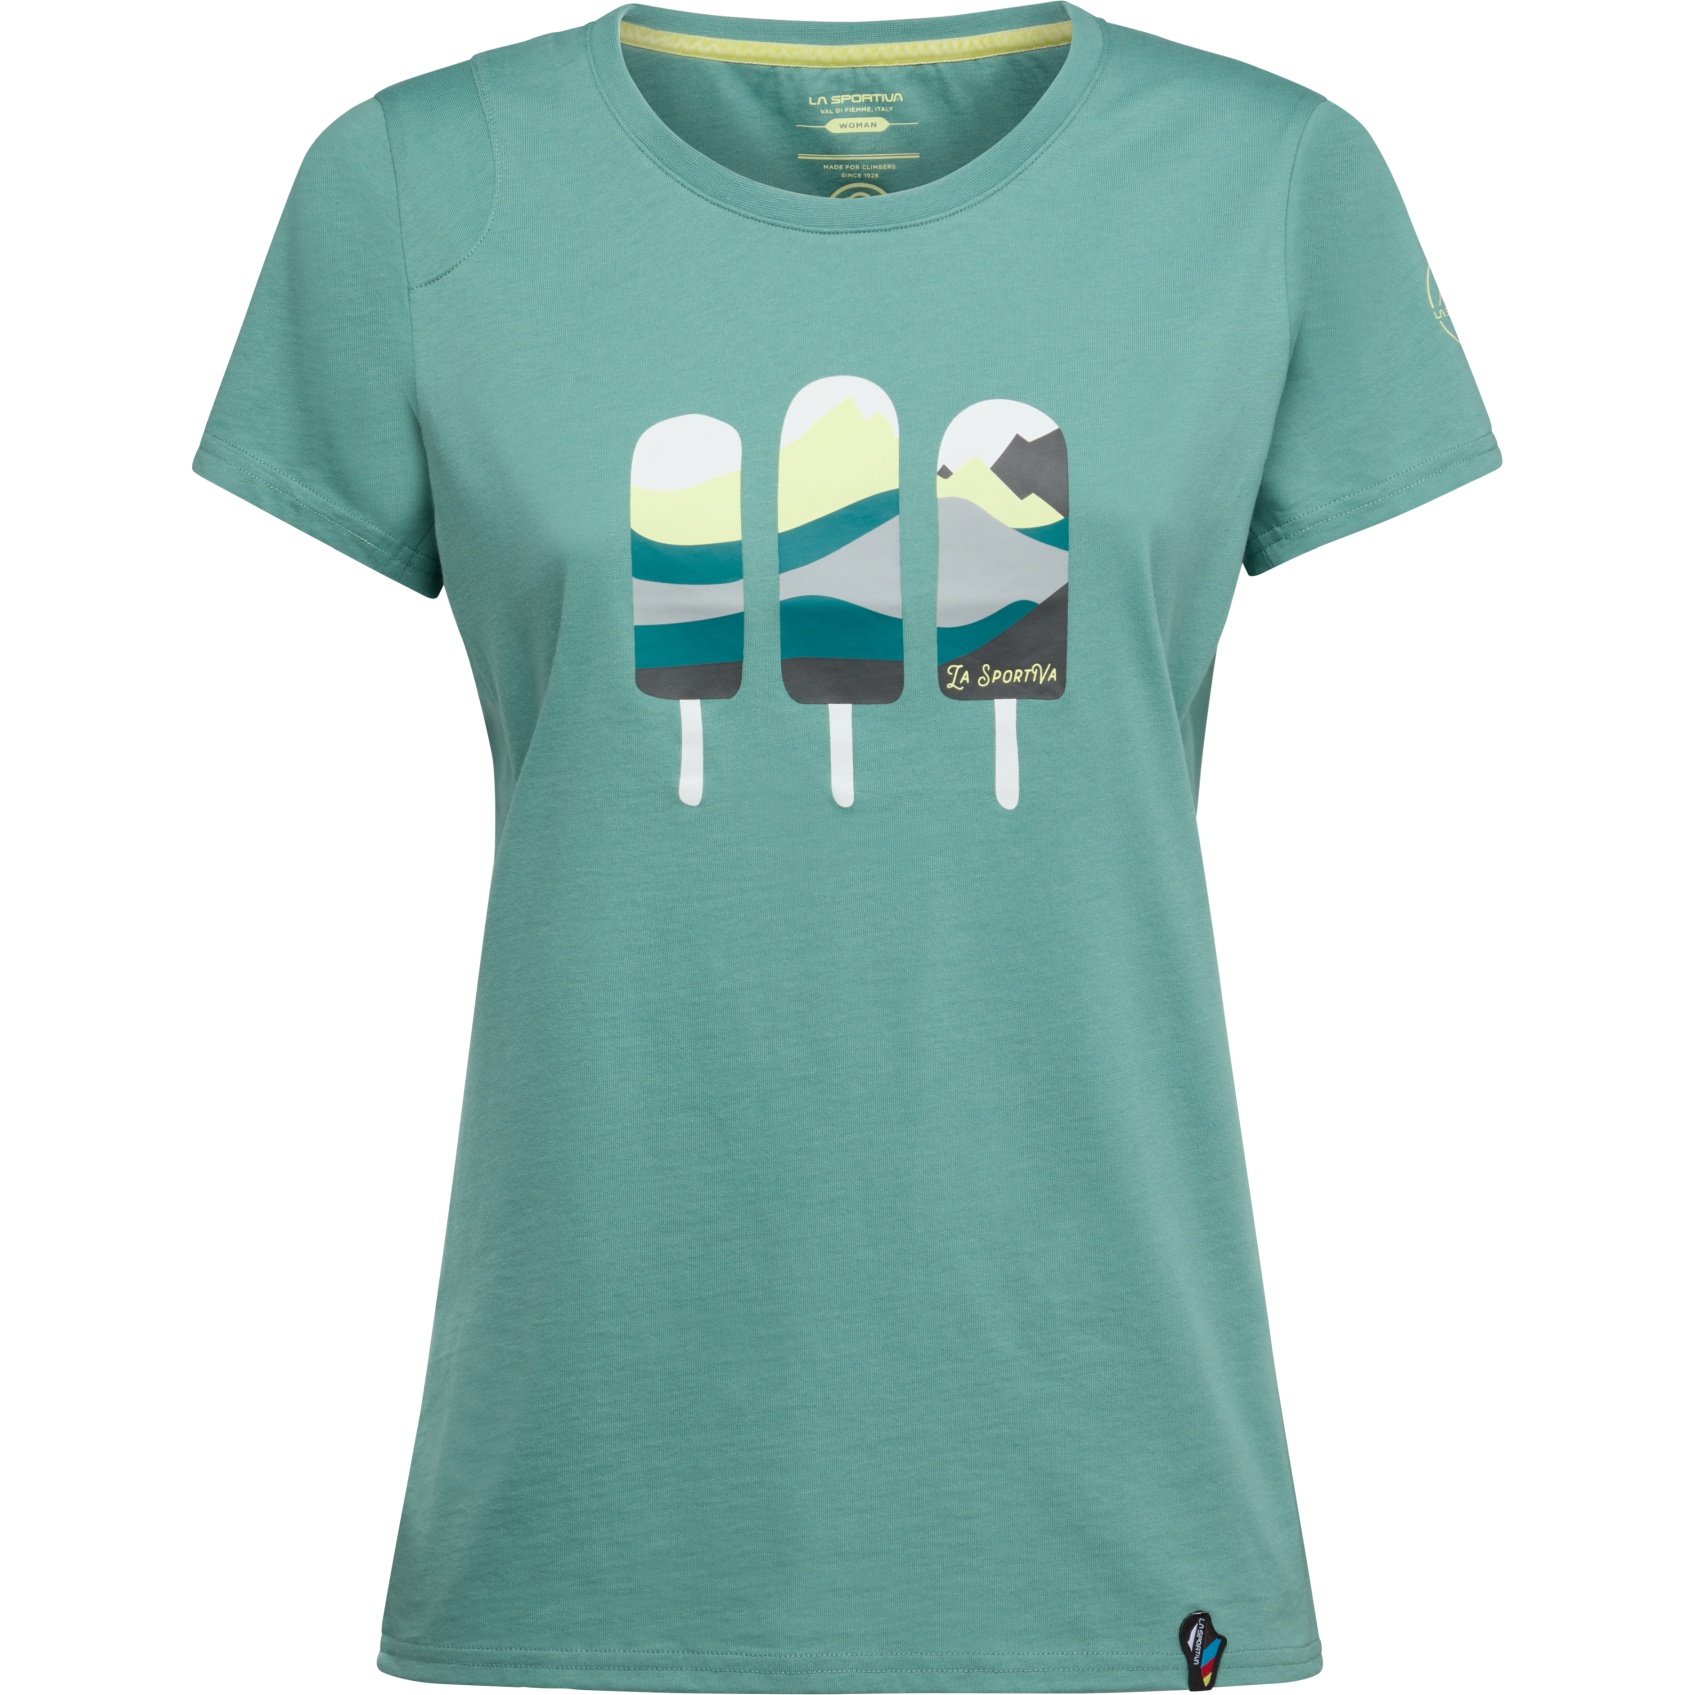 Produktbild von La Sportiva Icy Mountains T-Shirt Damen - Juniper